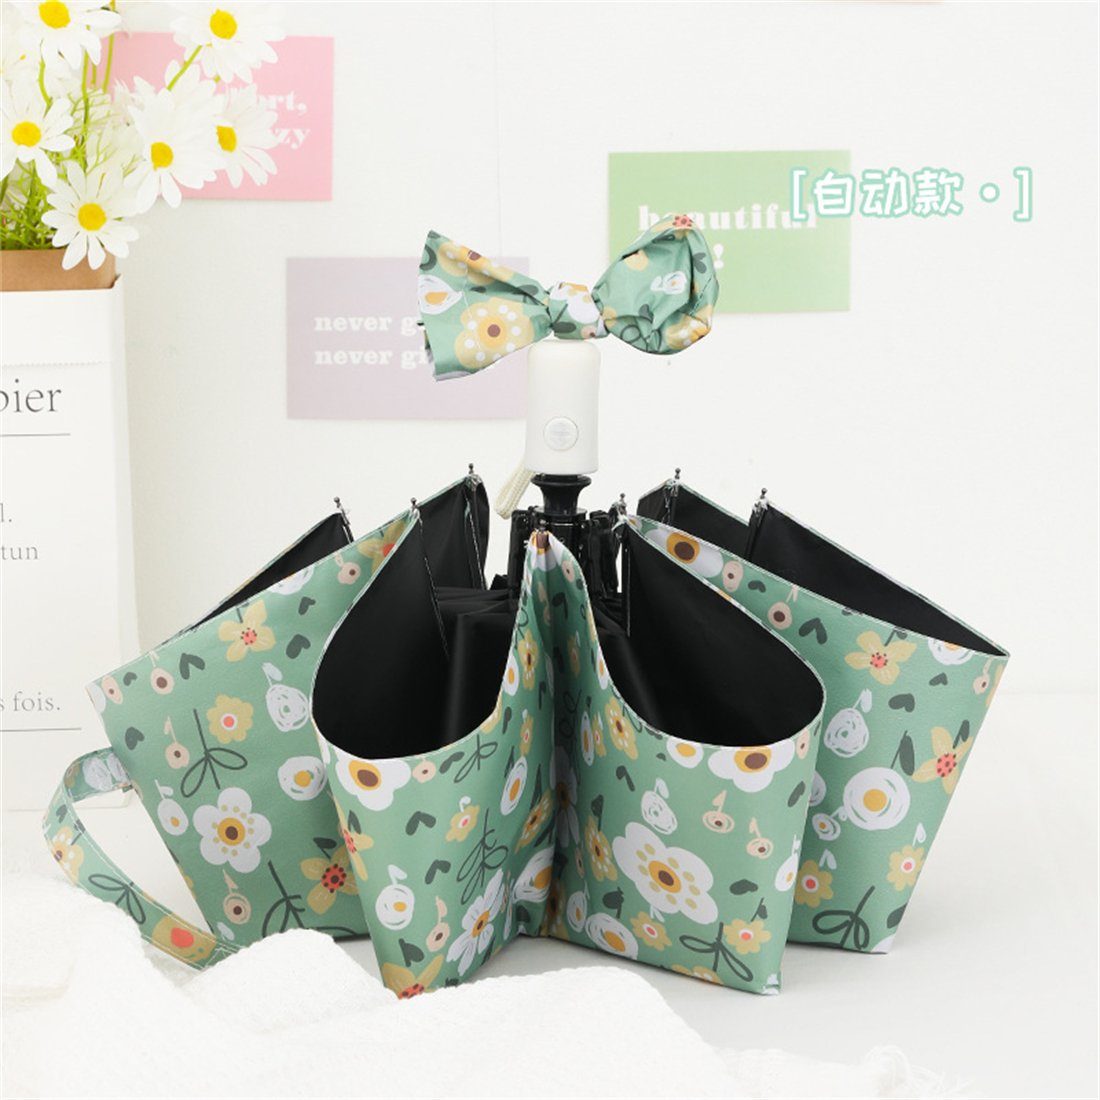 YOOdy~ Taschenregenschirm Leicht Kompakt Taschenschirme winzig klein für unterwegs Sonnenschutz Grüne Blüten in Öl